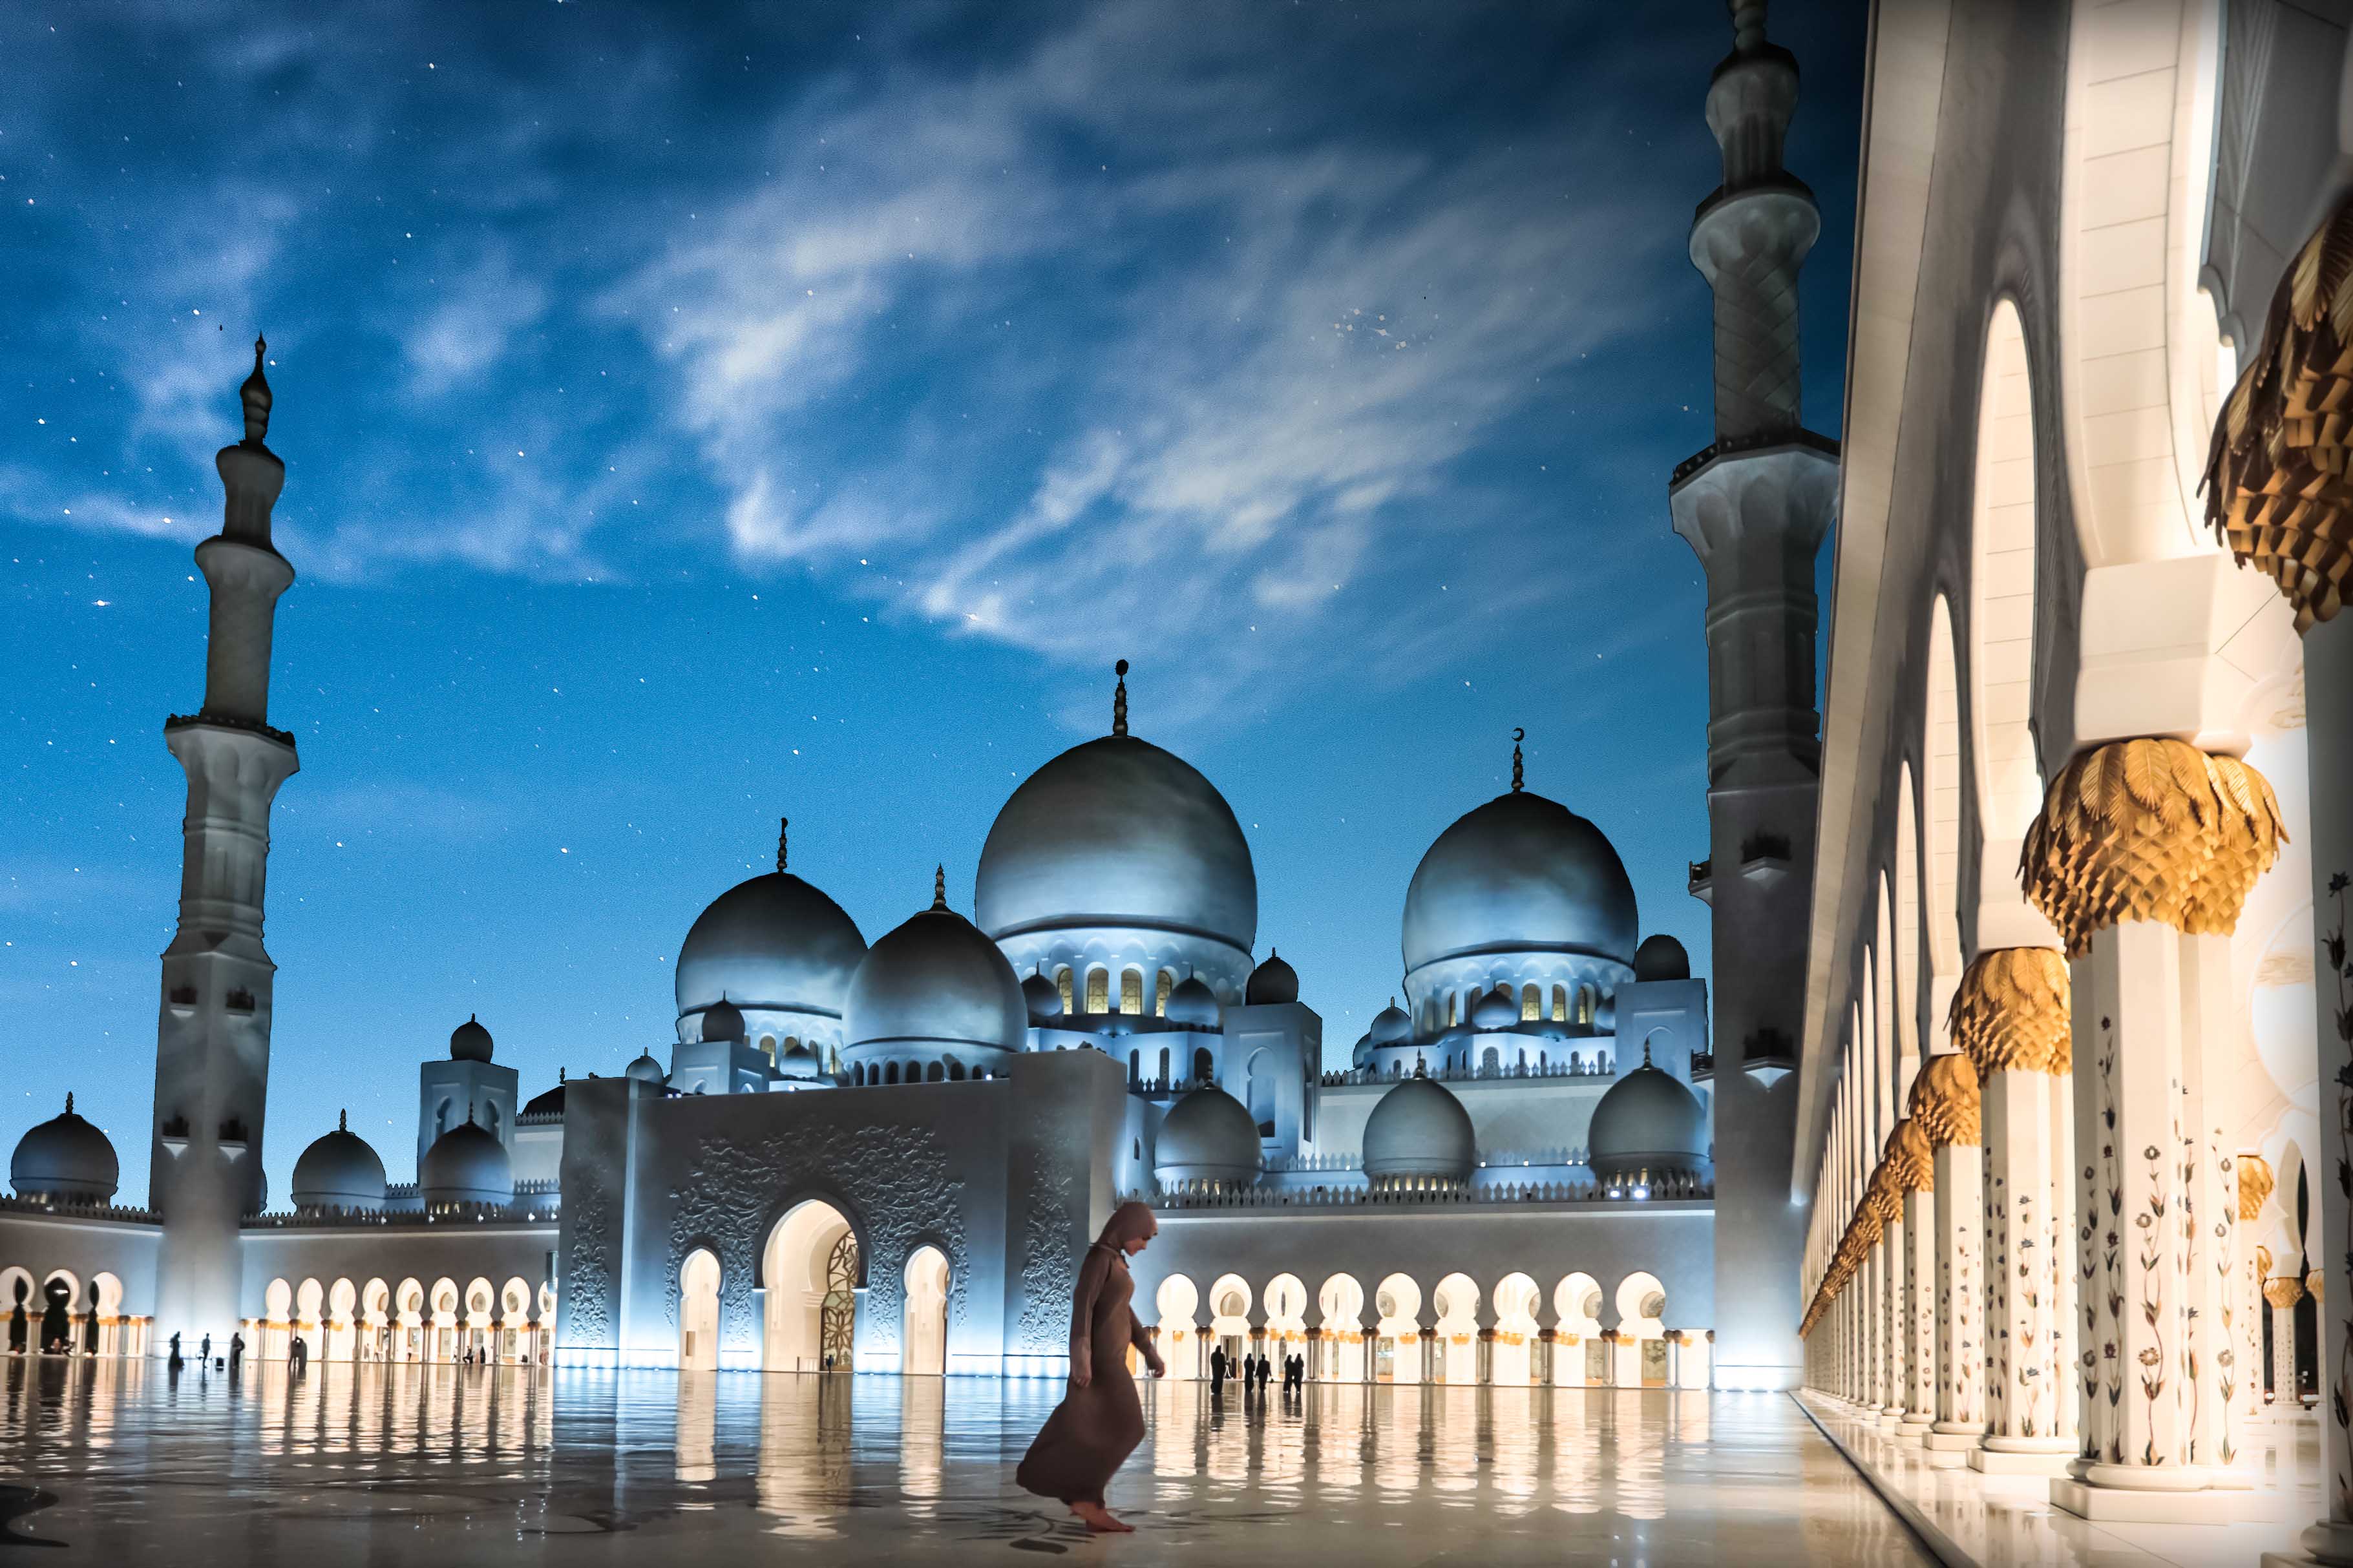 המסגד הגדול שייך זאיד (Sheikh Zayed Grand Mosque)